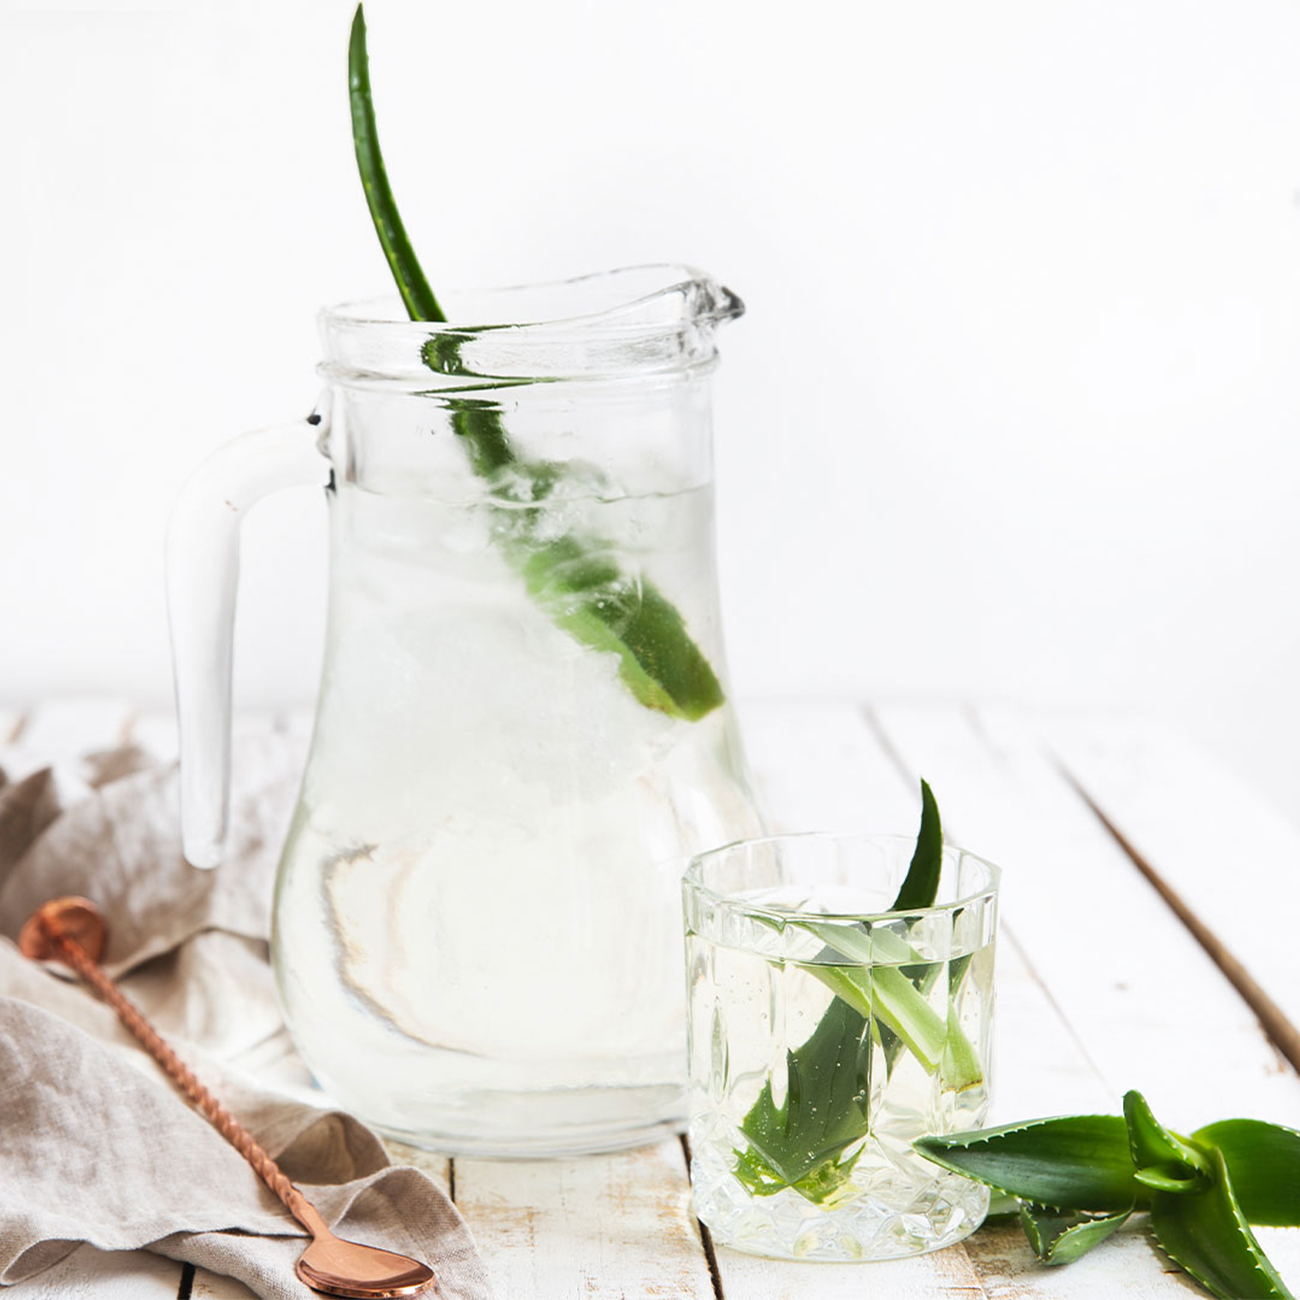 Billede: Kande og glas med herbalife nutrition aloemax-drik med aloe vera-blade